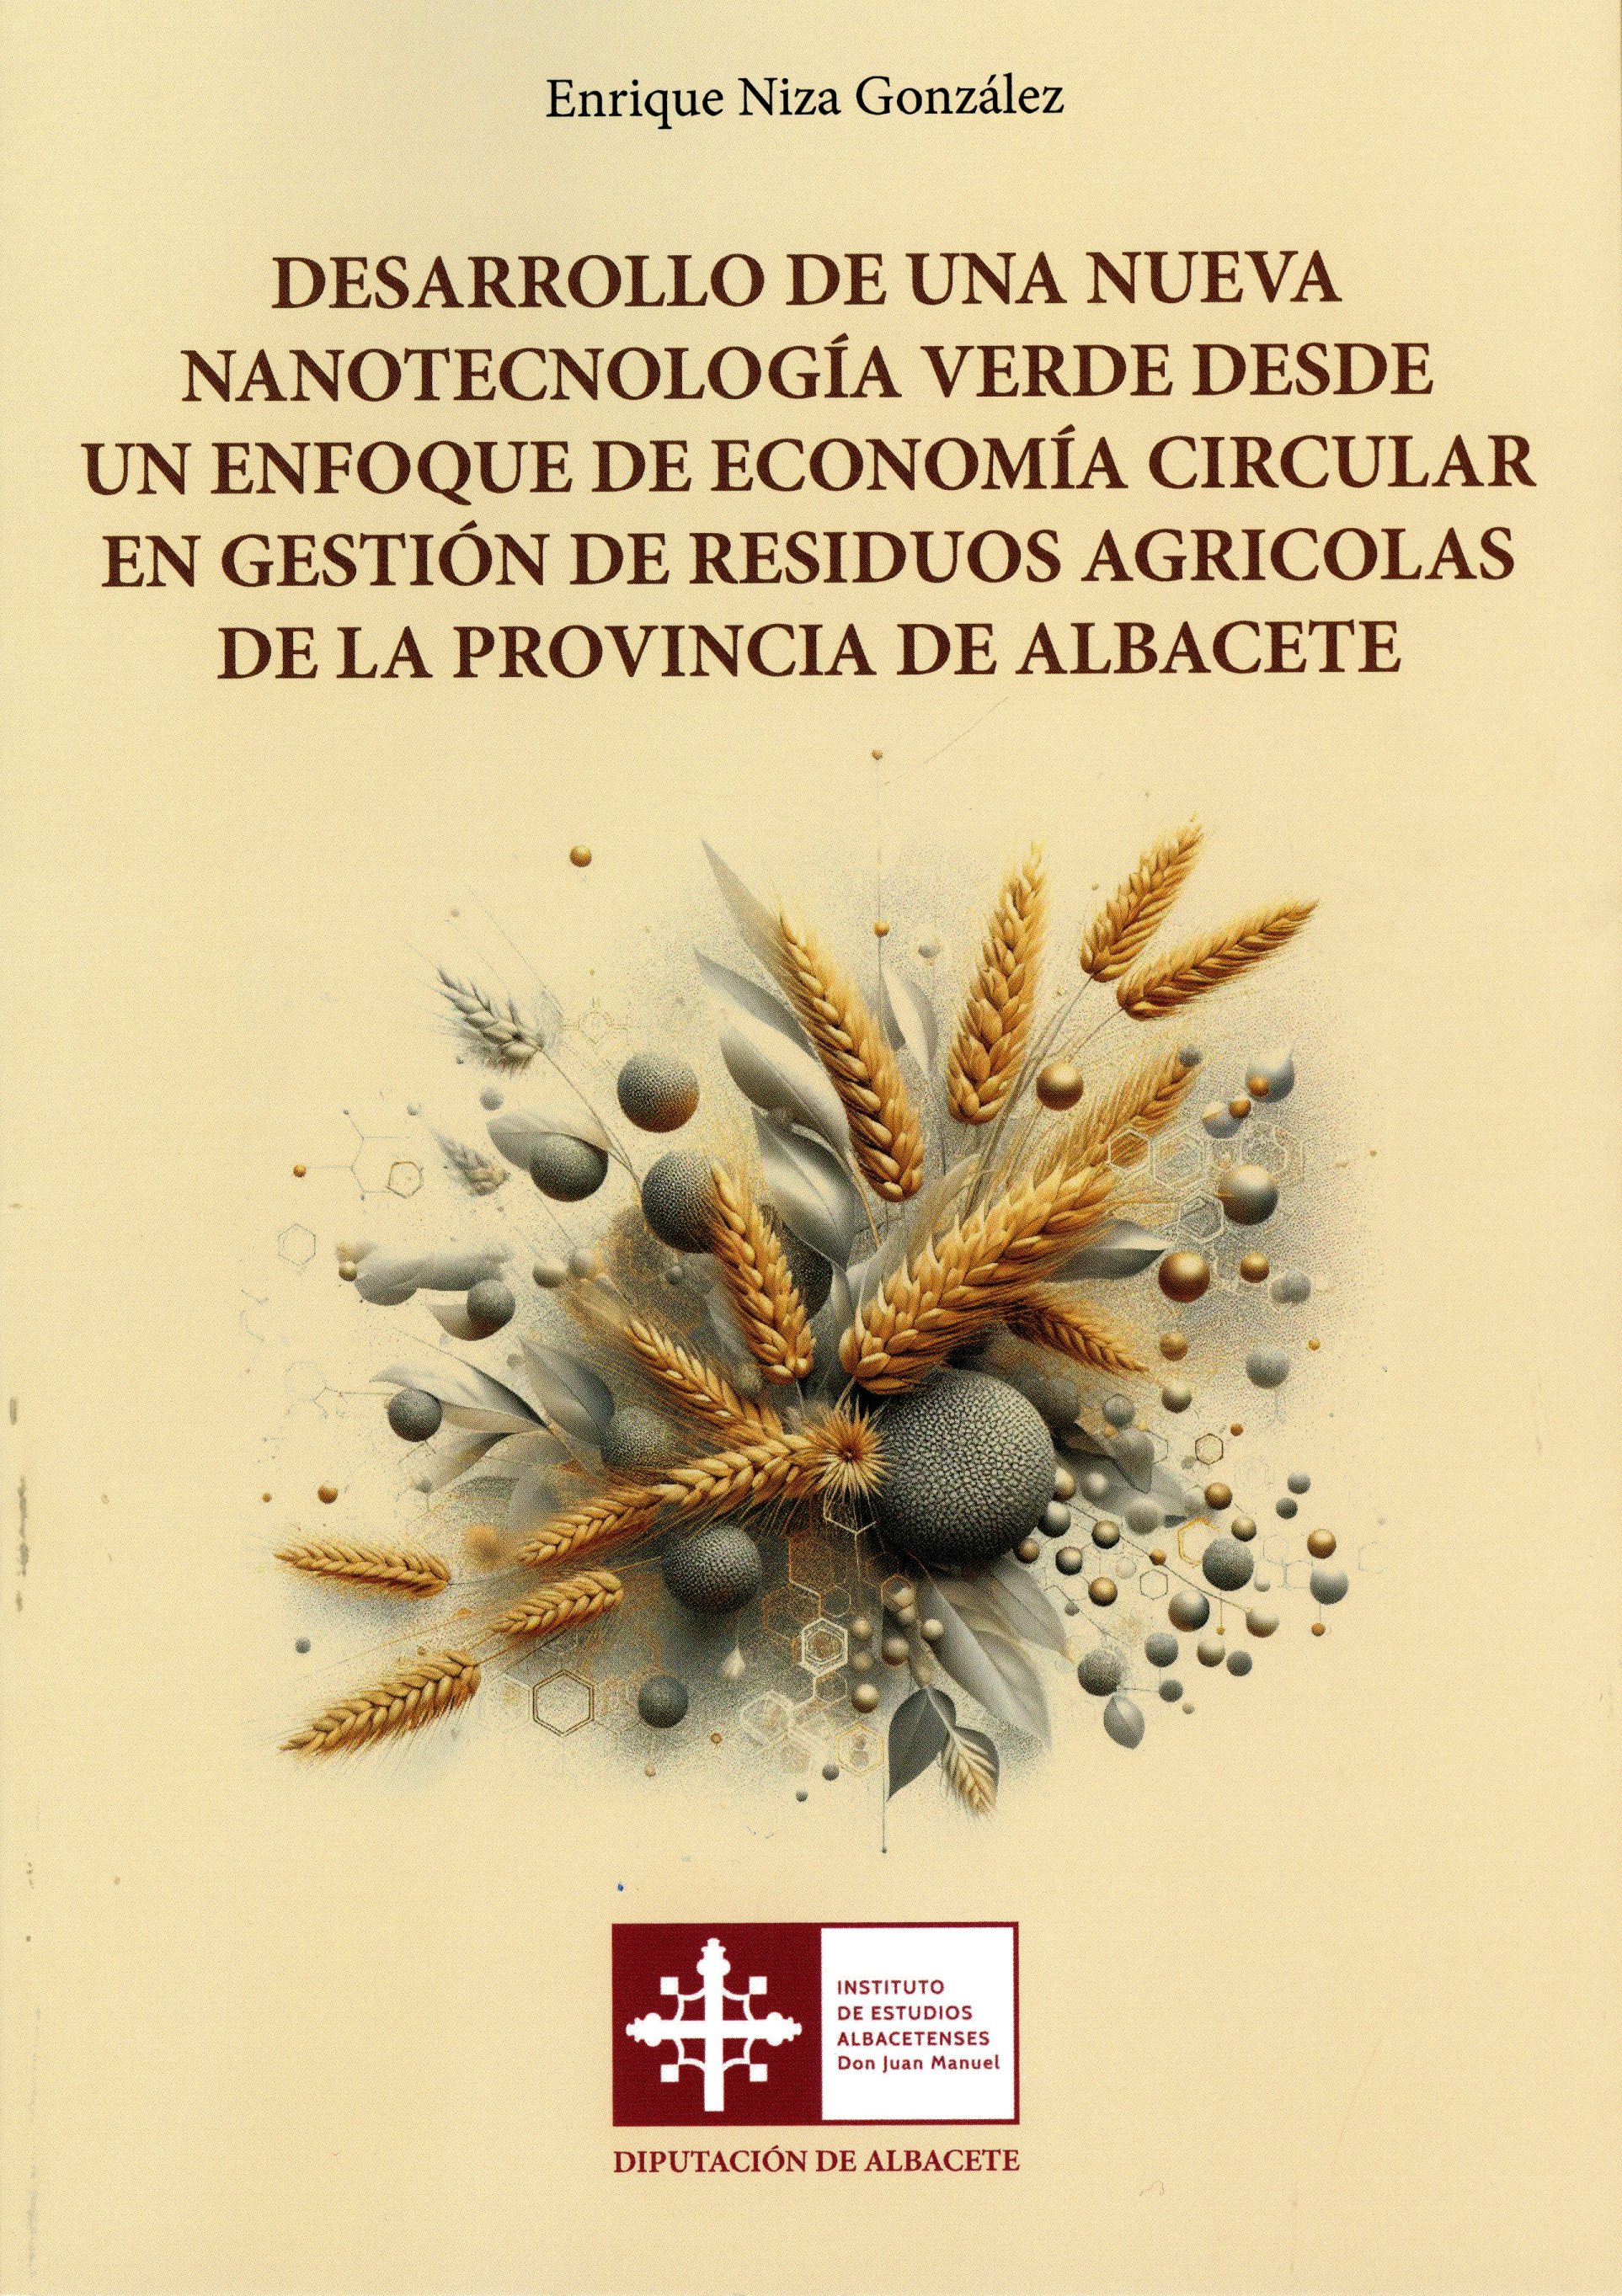 Imagen de portada del libro Desarrollo de una nueva nanotecnología verde desde un enfoque de economía circular en gestión de residuos agrícolas de la provincia de Albacete